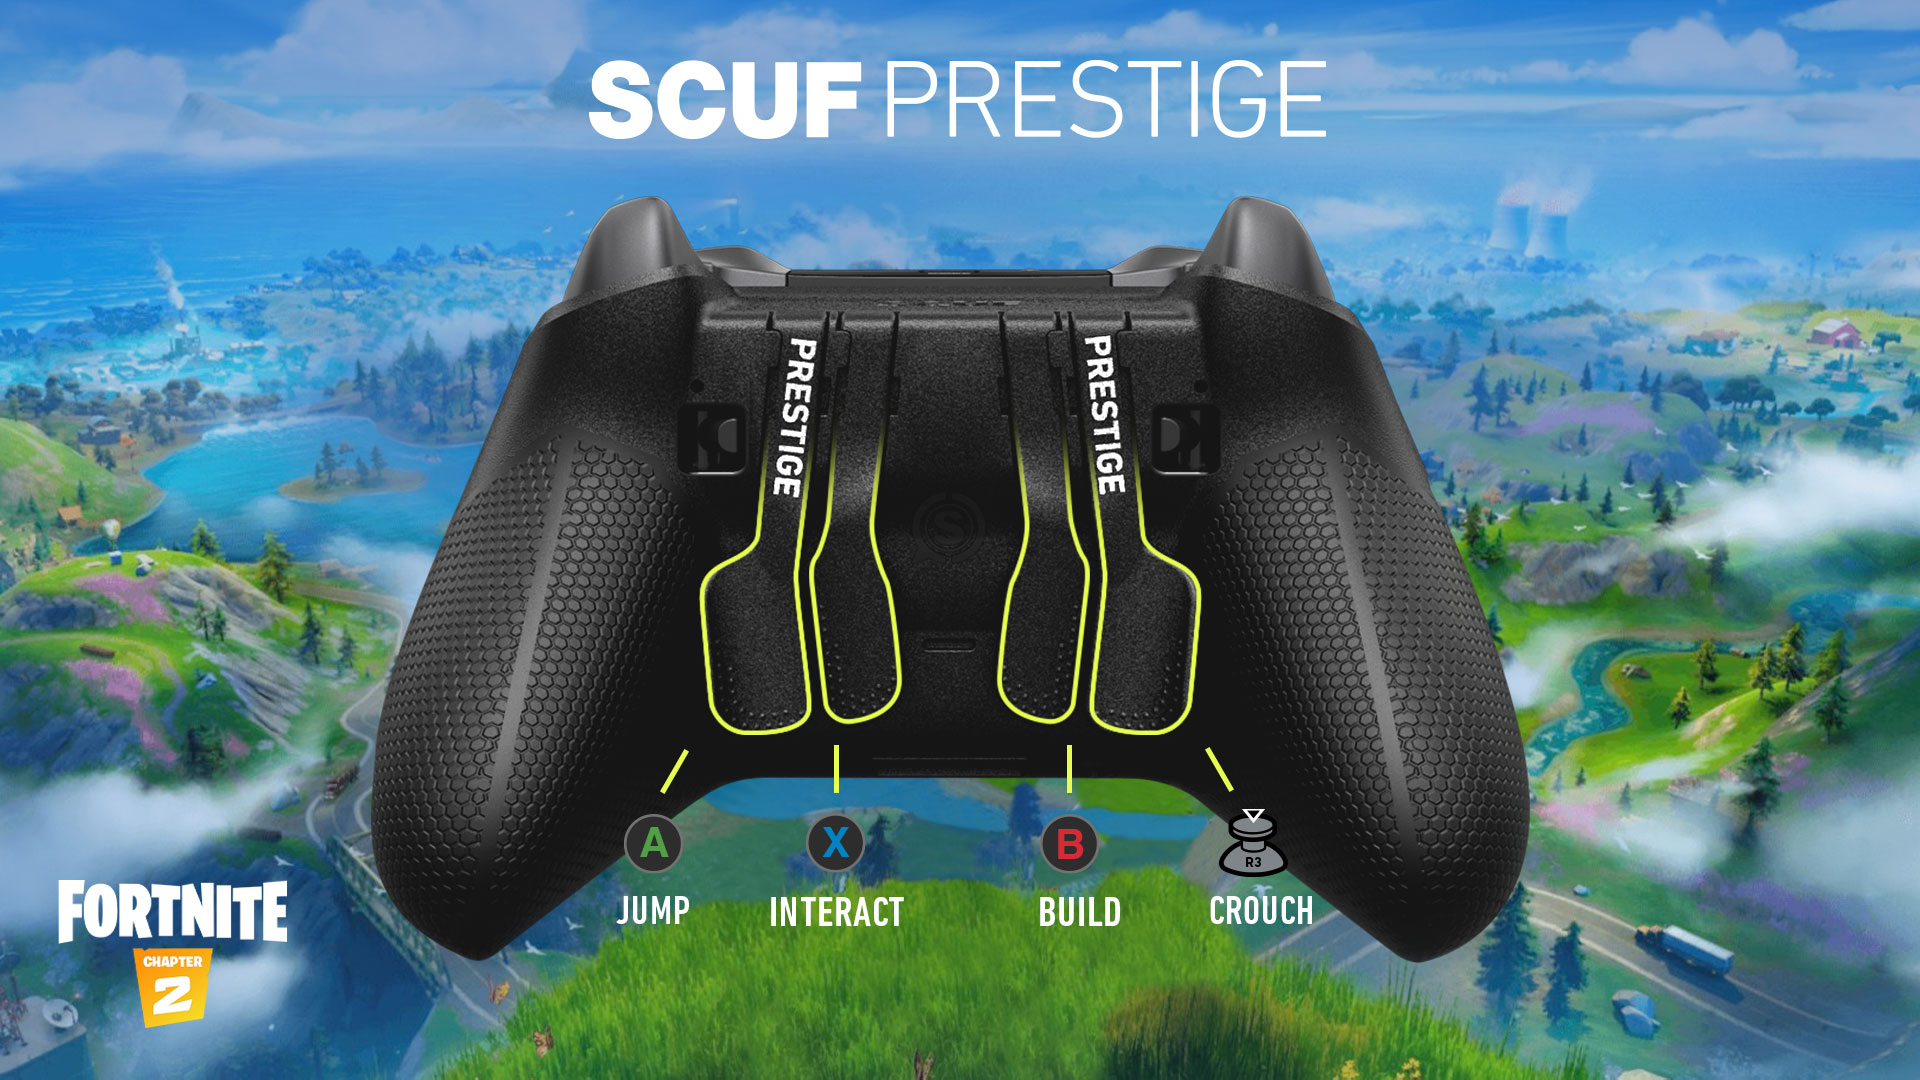 Configurazione del controller SCUF Prestige per Fortnite su Xbox One